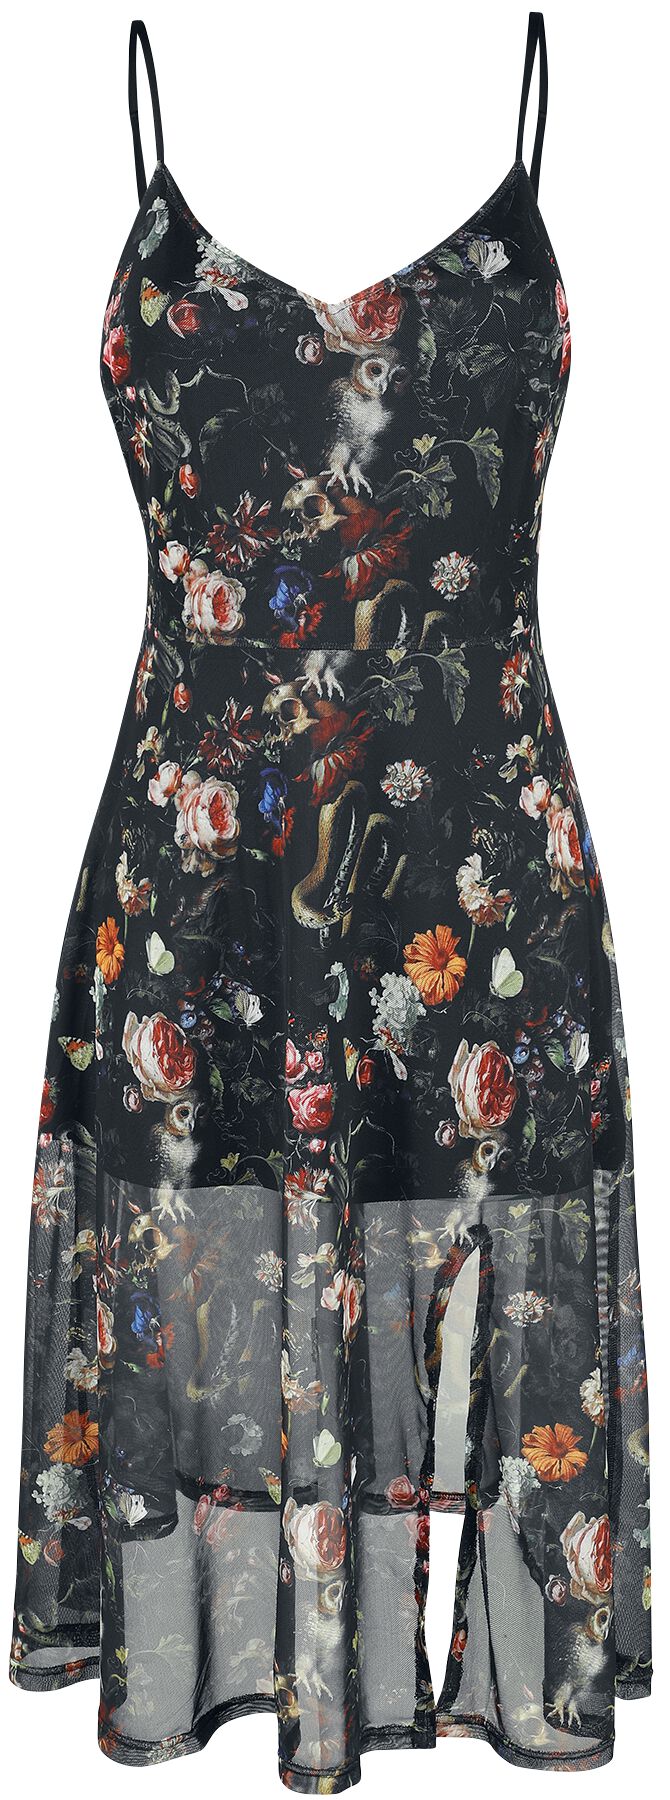 Image of Abito media lunghezza Gothic di Jawbreaker - Night Garden Print Midi Dress - M a 4XL - Donna - multicolore